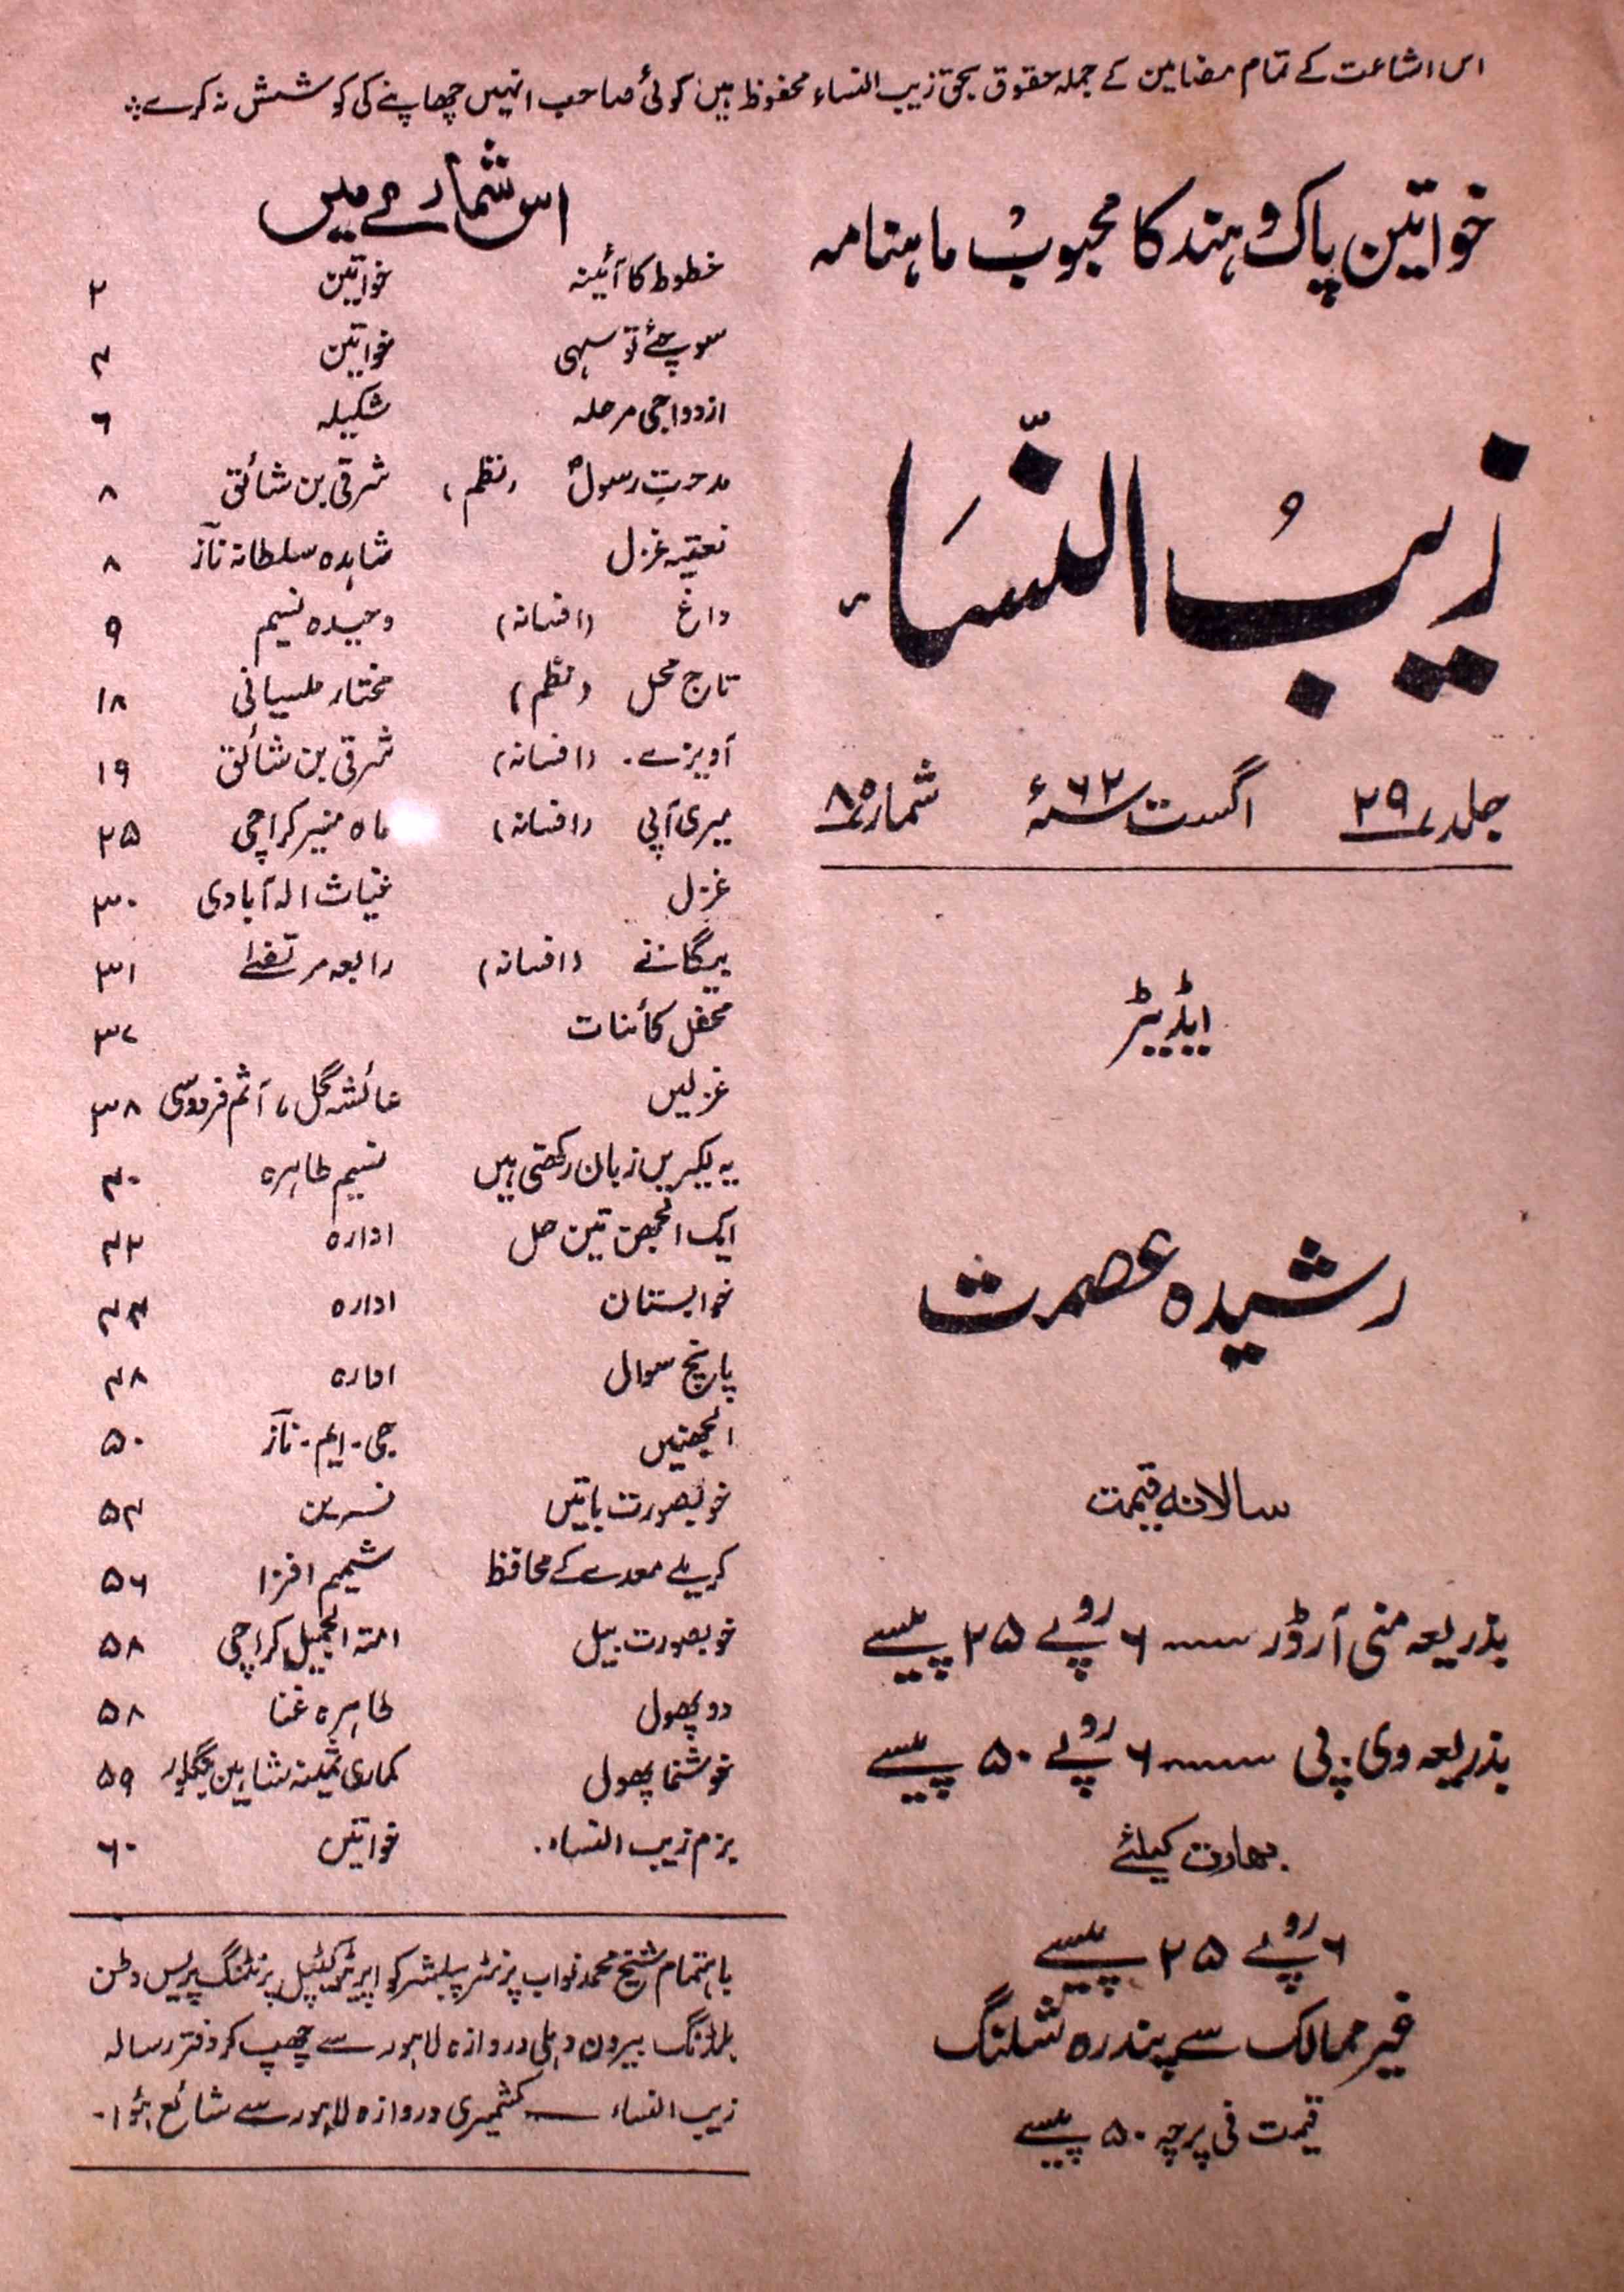 zaib-un-nisa-shumarah-number-085-rasheeda-ismat-magazines